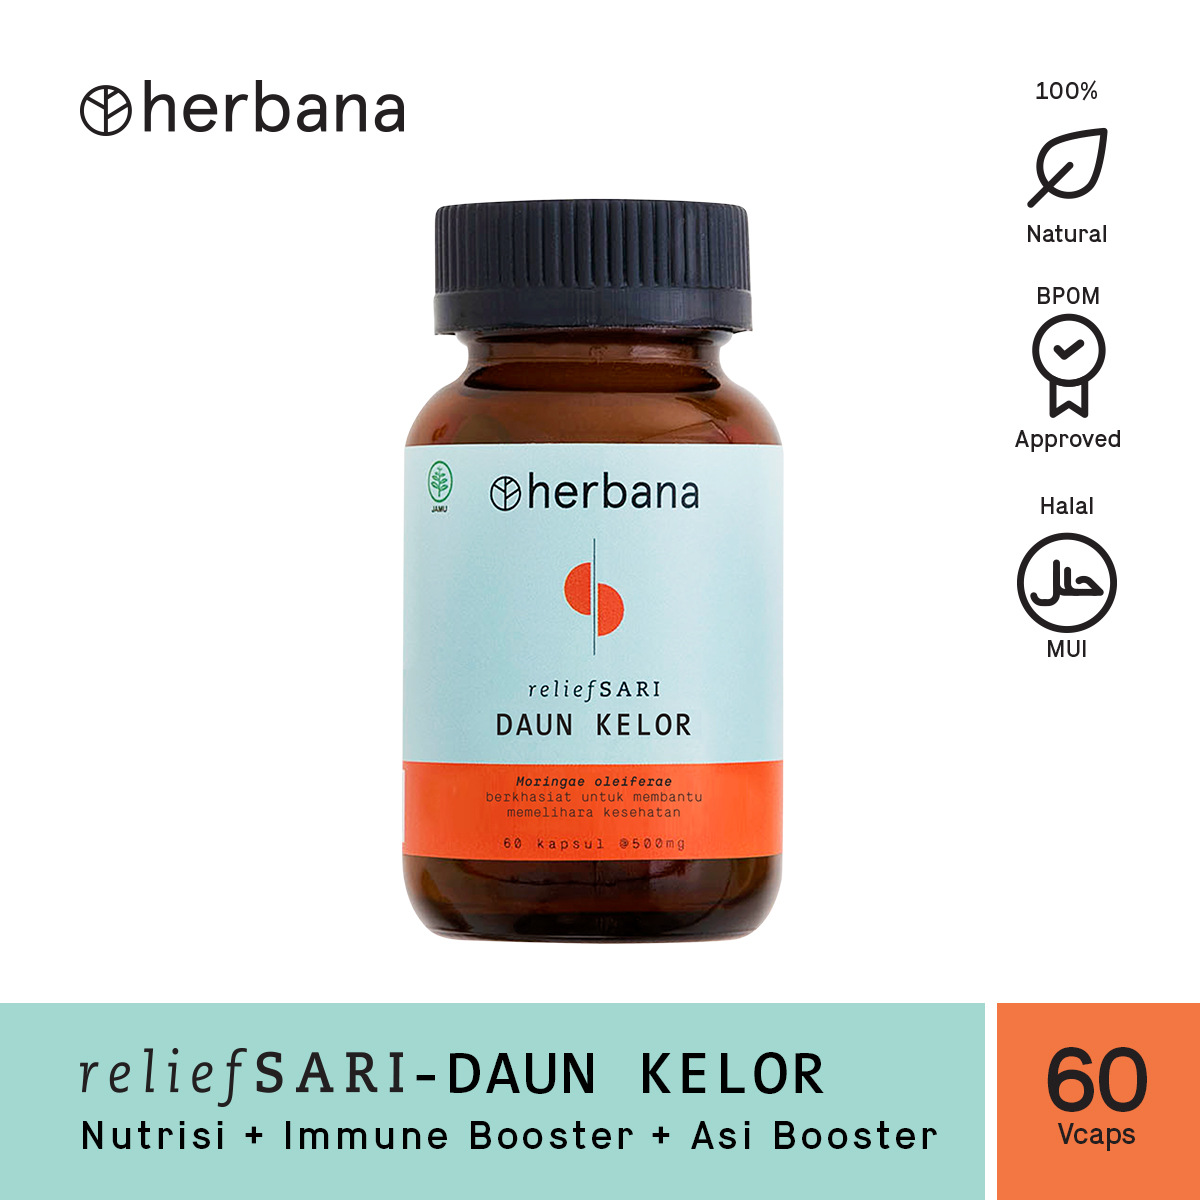 herbana-relief-sari-daun-kelor-60s-60-capsules-37-1615972962.jpg